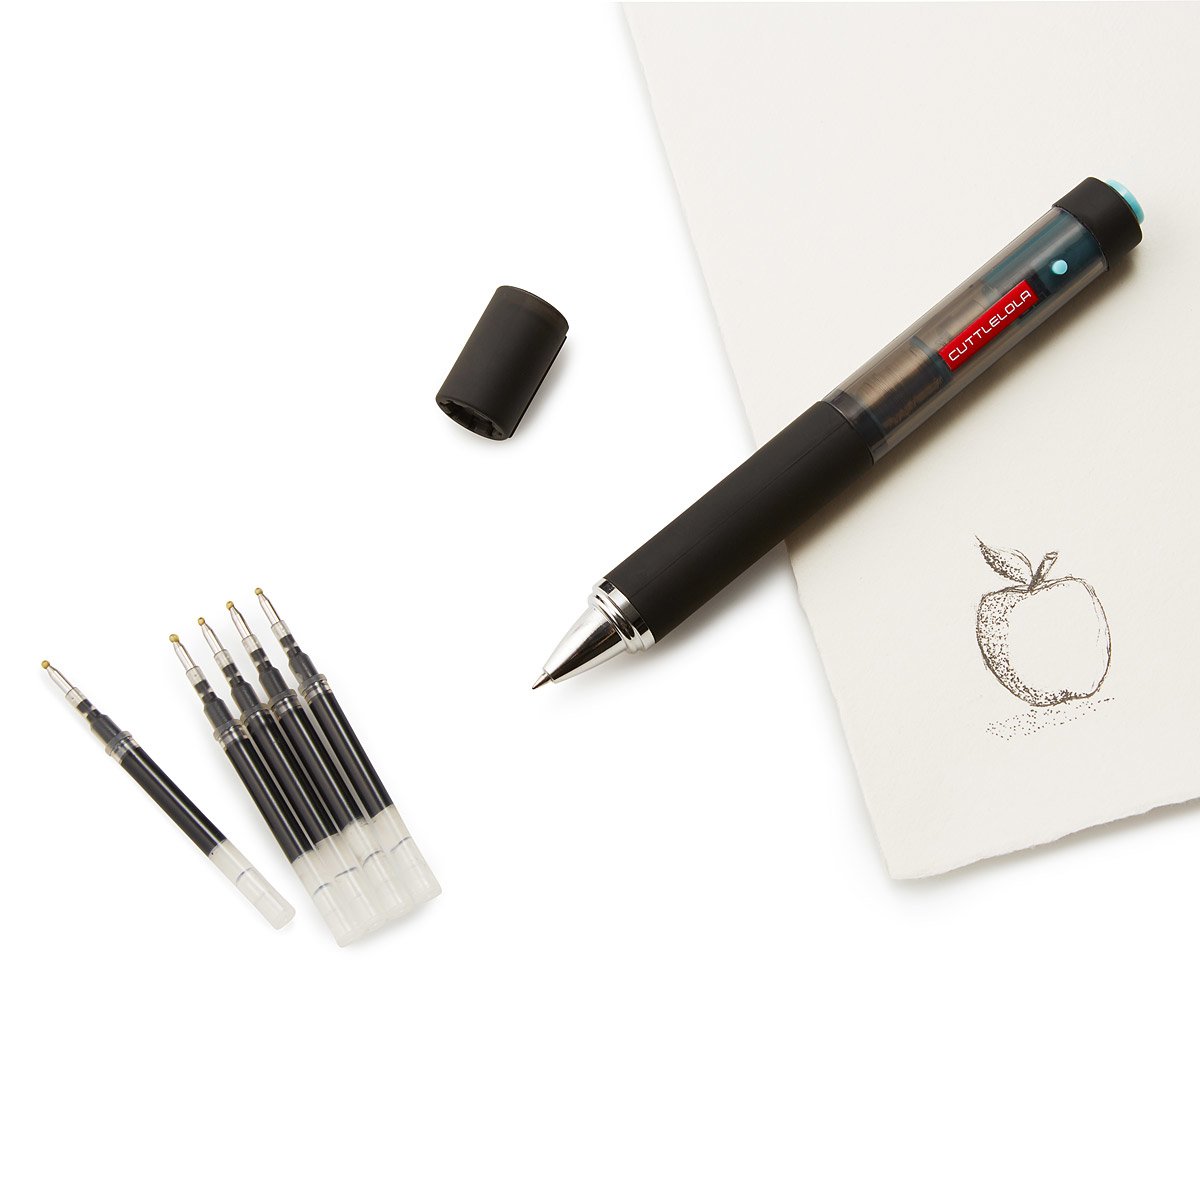 cuttlelola, dotspen, autopens, stippling pen, electric pen, tattoo pen,  pointillism pen, artists pen.